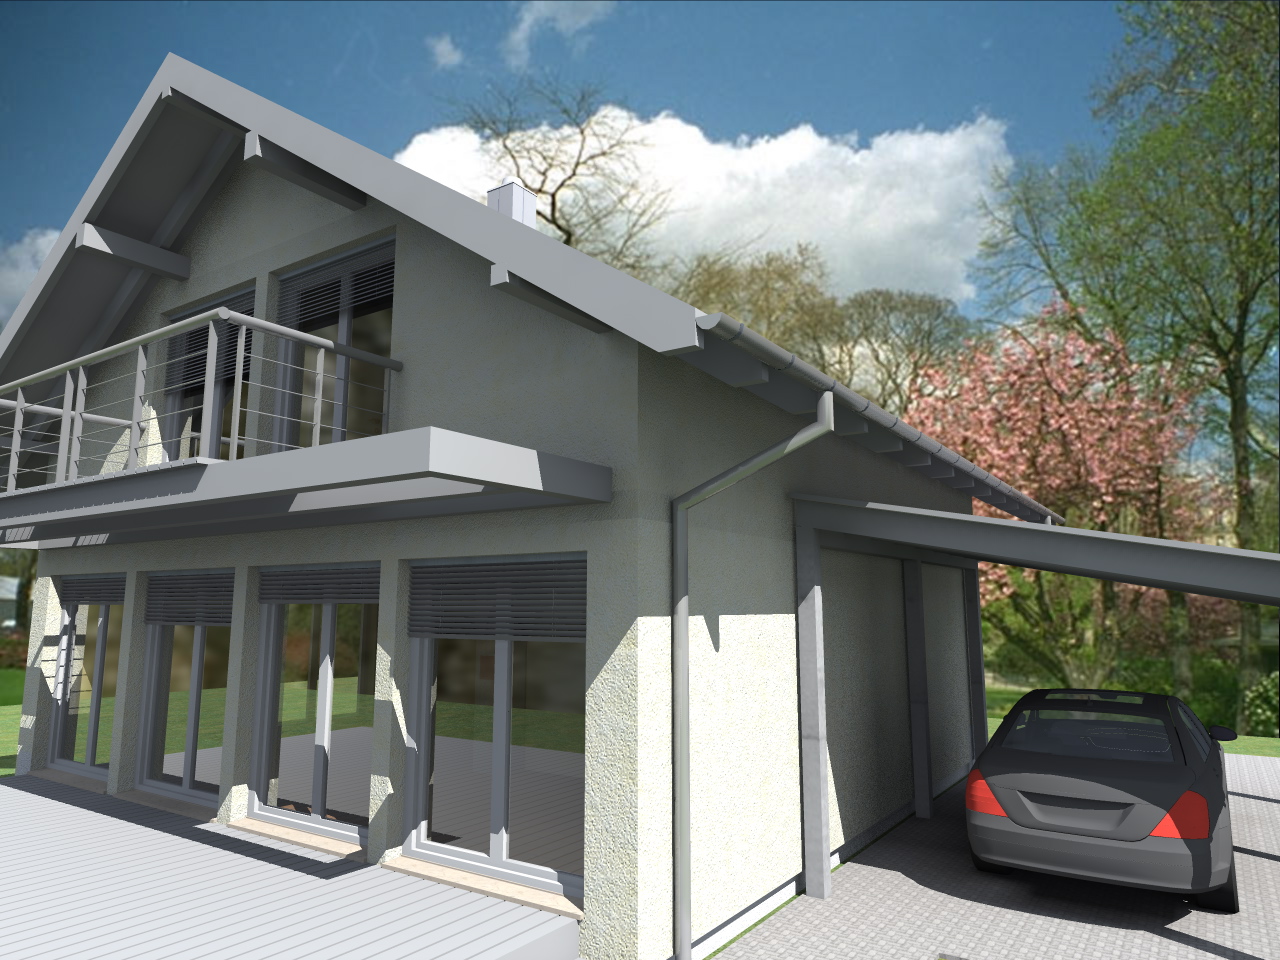 Ytong Einfamilienhaus moderner Stil mit Balkon